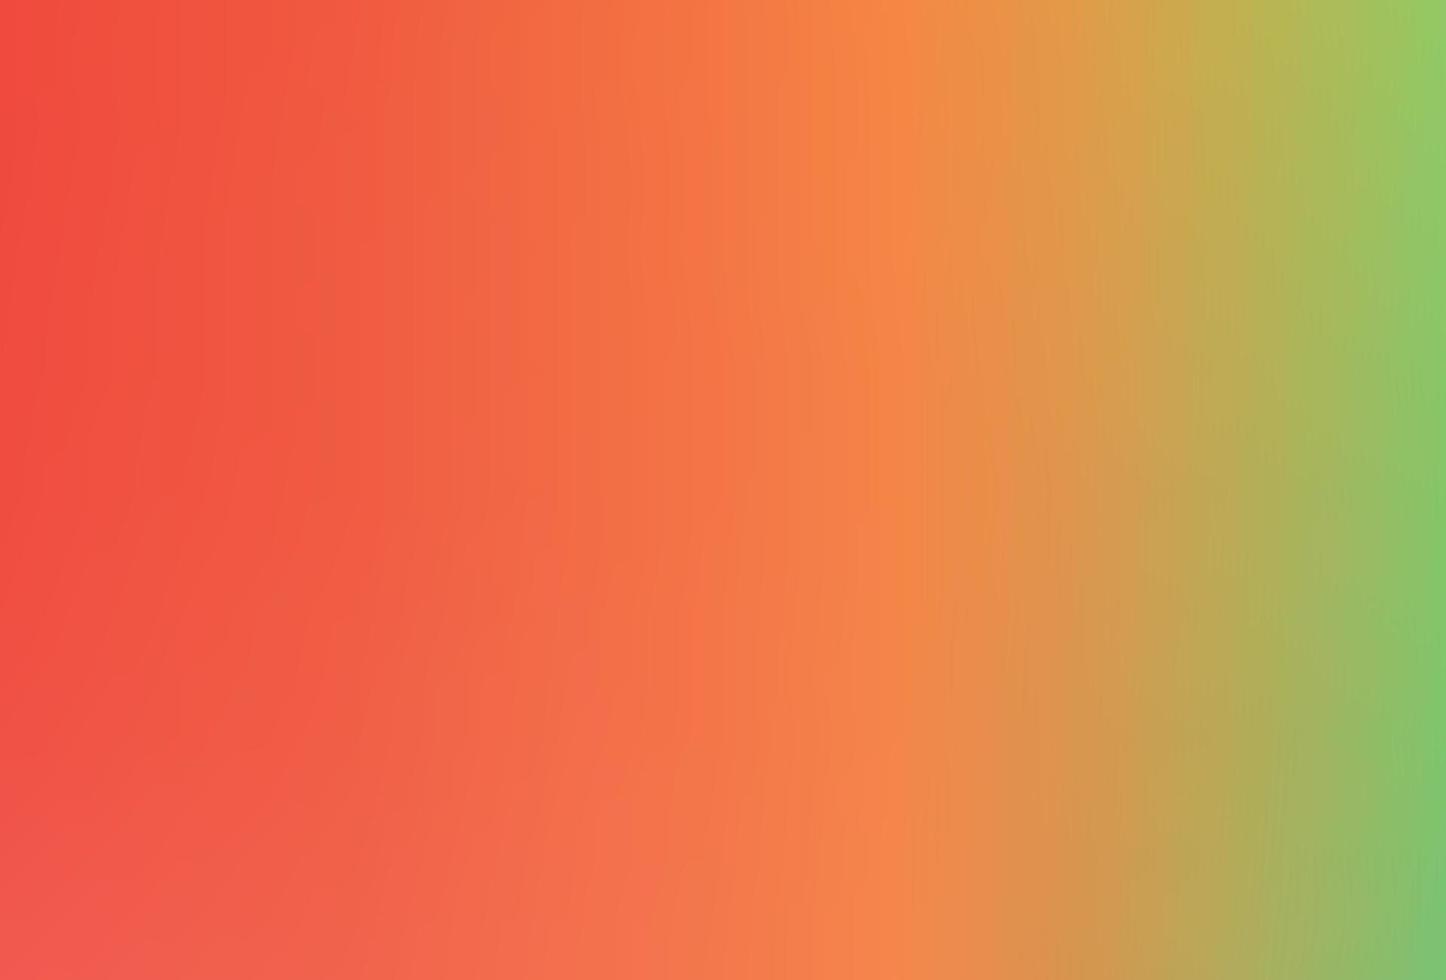 fundo de vetor colorido arco-íris, fundo abstrato